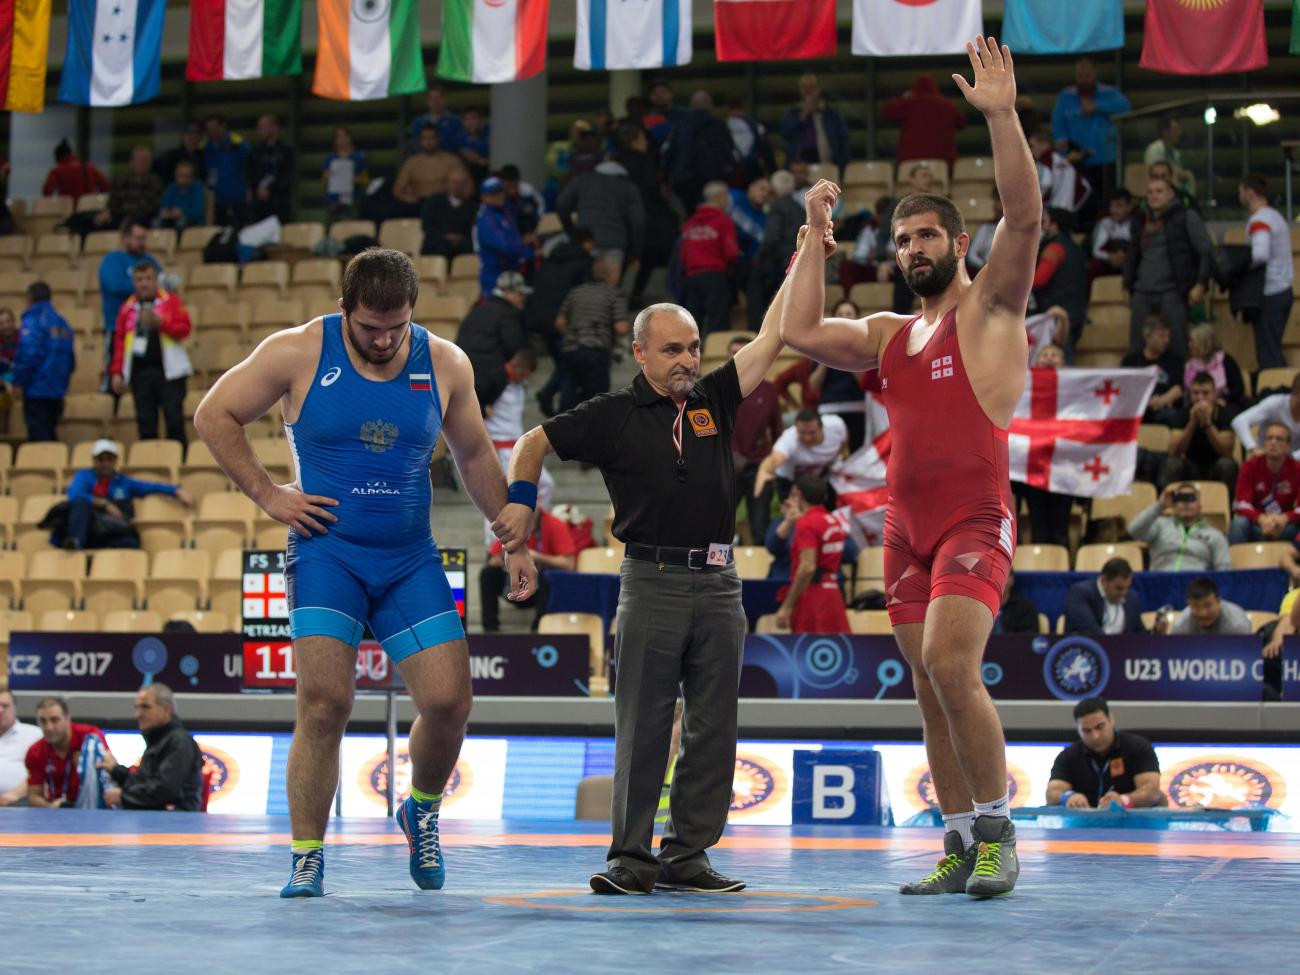 Georgia's Petriashvili strikes gold at Under-23 World Wrestling Championships